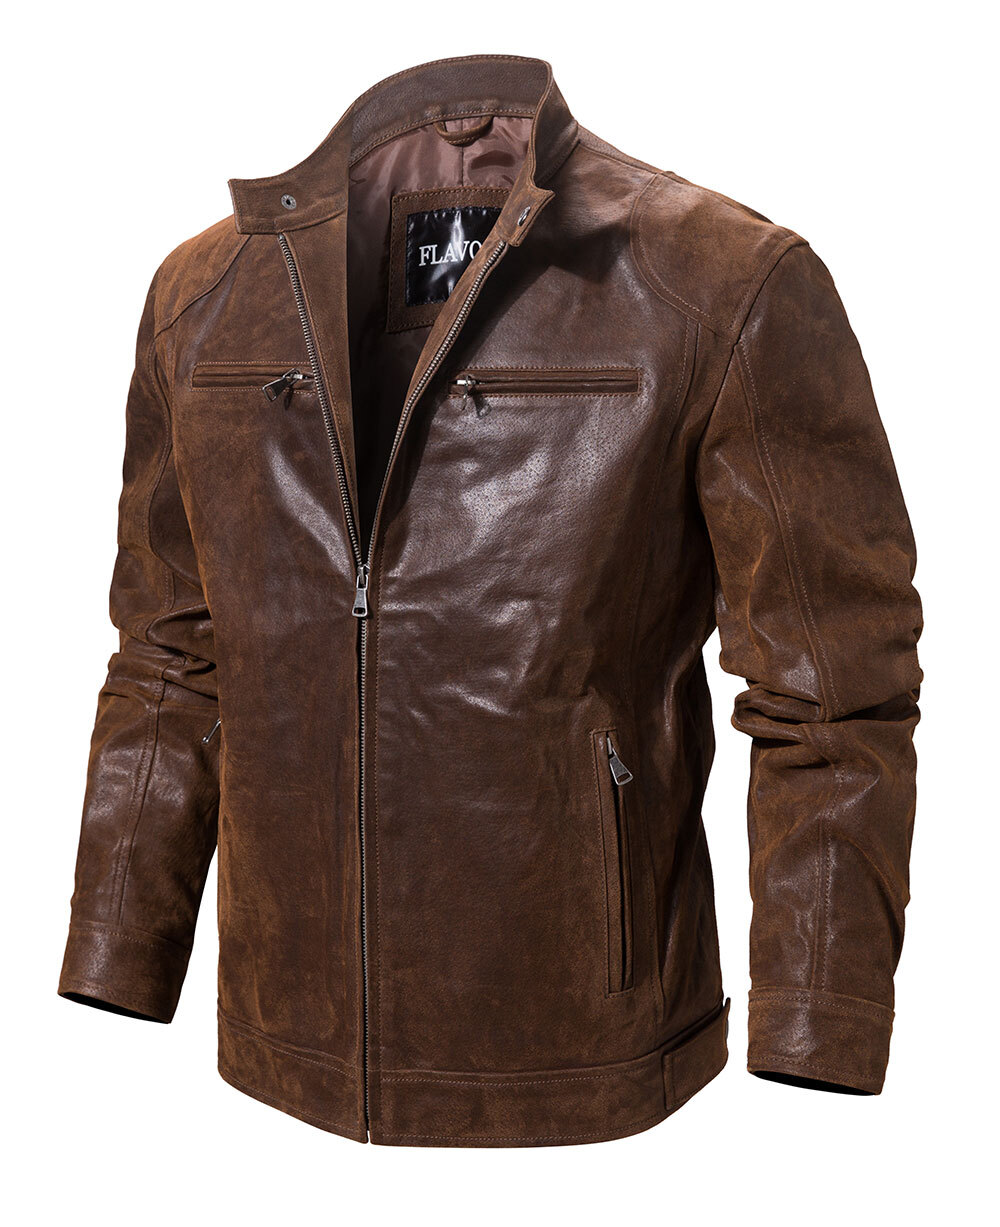 Men's Brown Leather Moto Jacket Zippered Biker Buy moto zipper biker jacket| moto zipper biker jacket brands